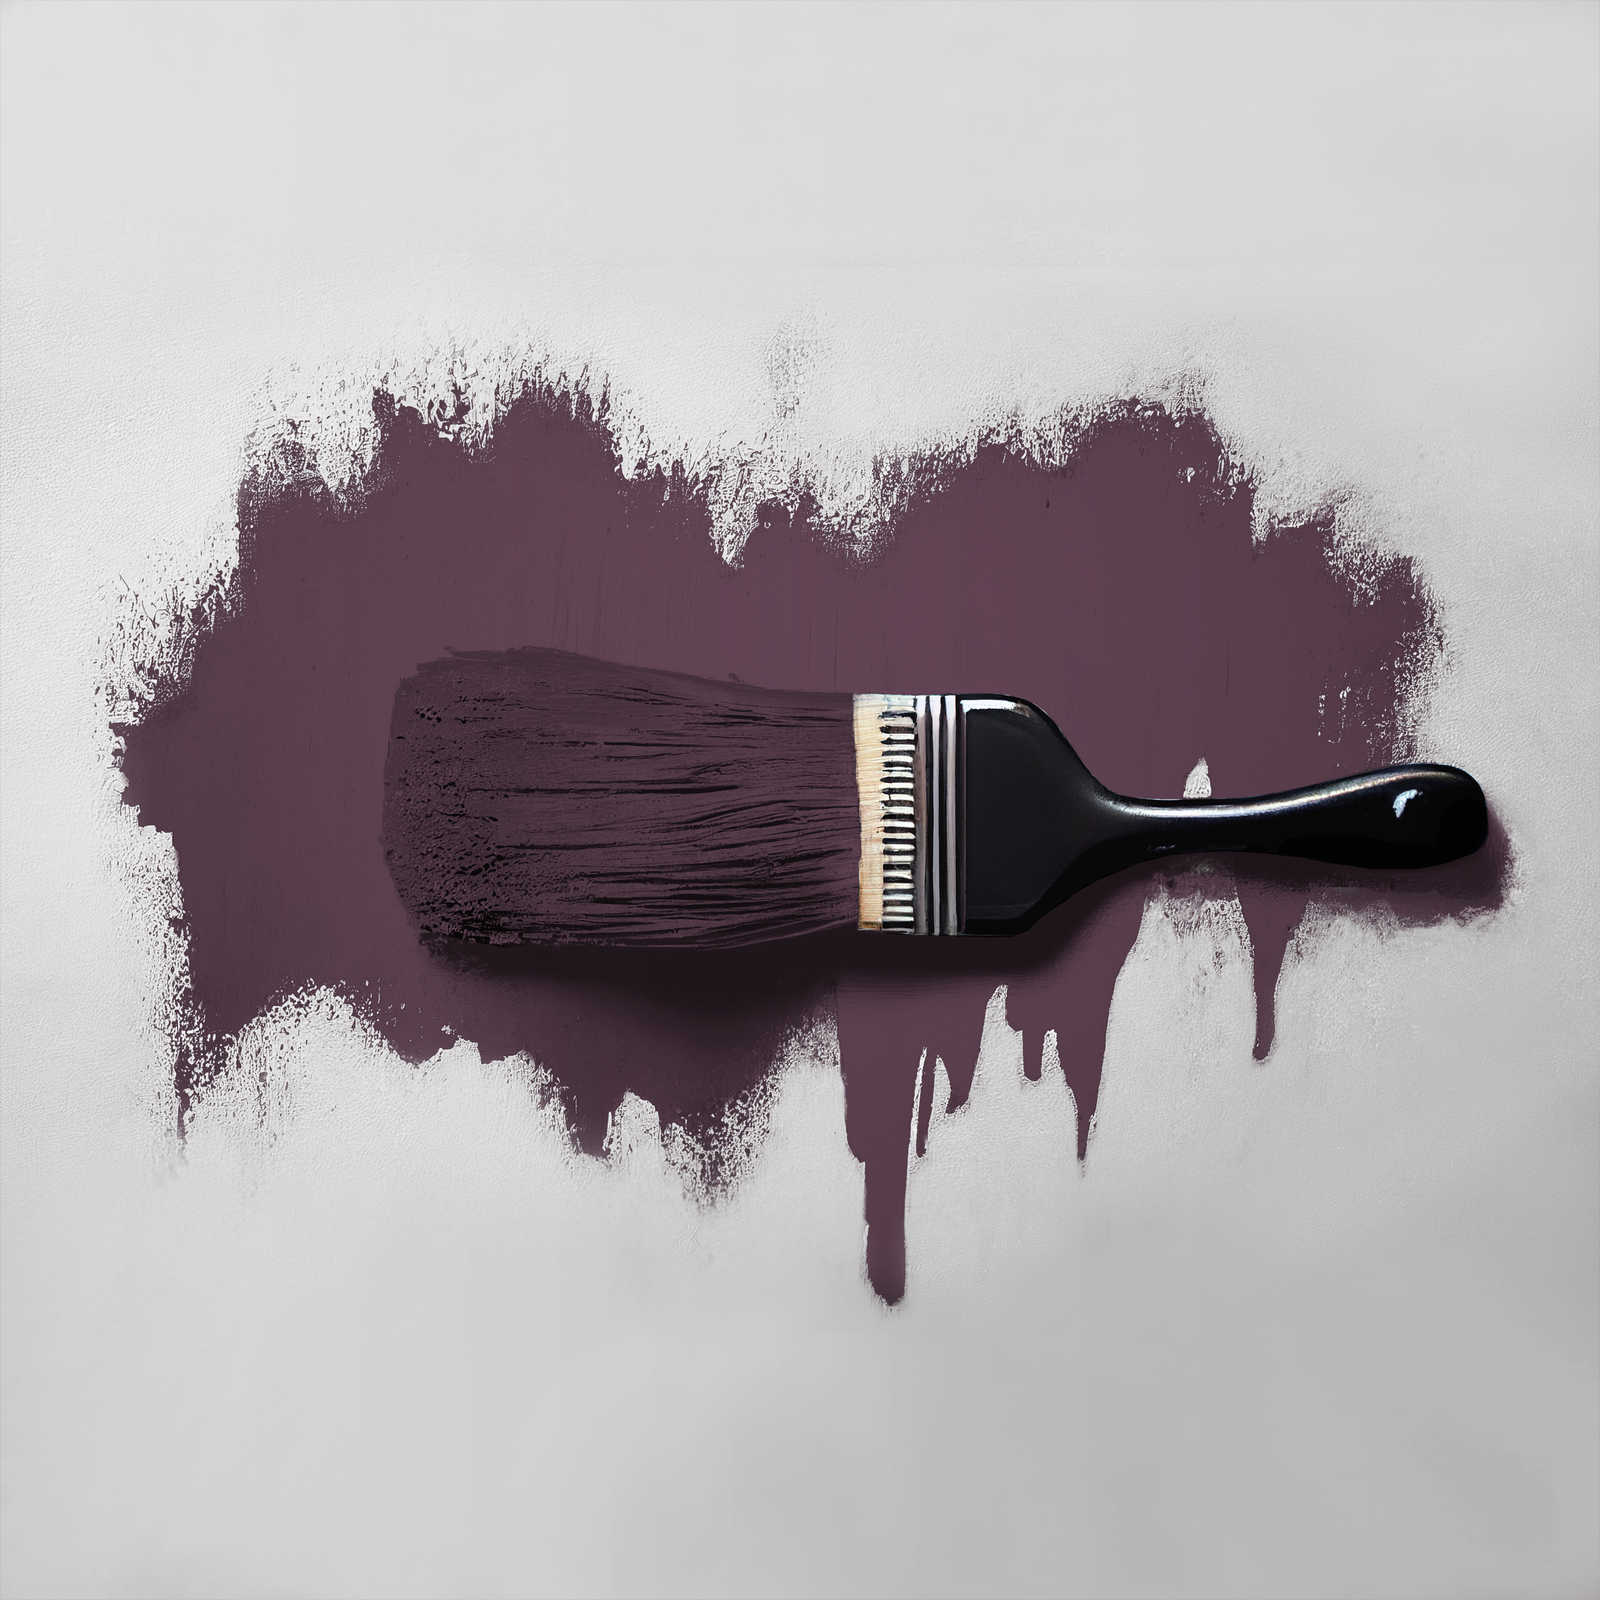             Peinture murale TCK2007 »Beady Beetroot« dans un interlude de violet et de rouge – 5,0 litres
        